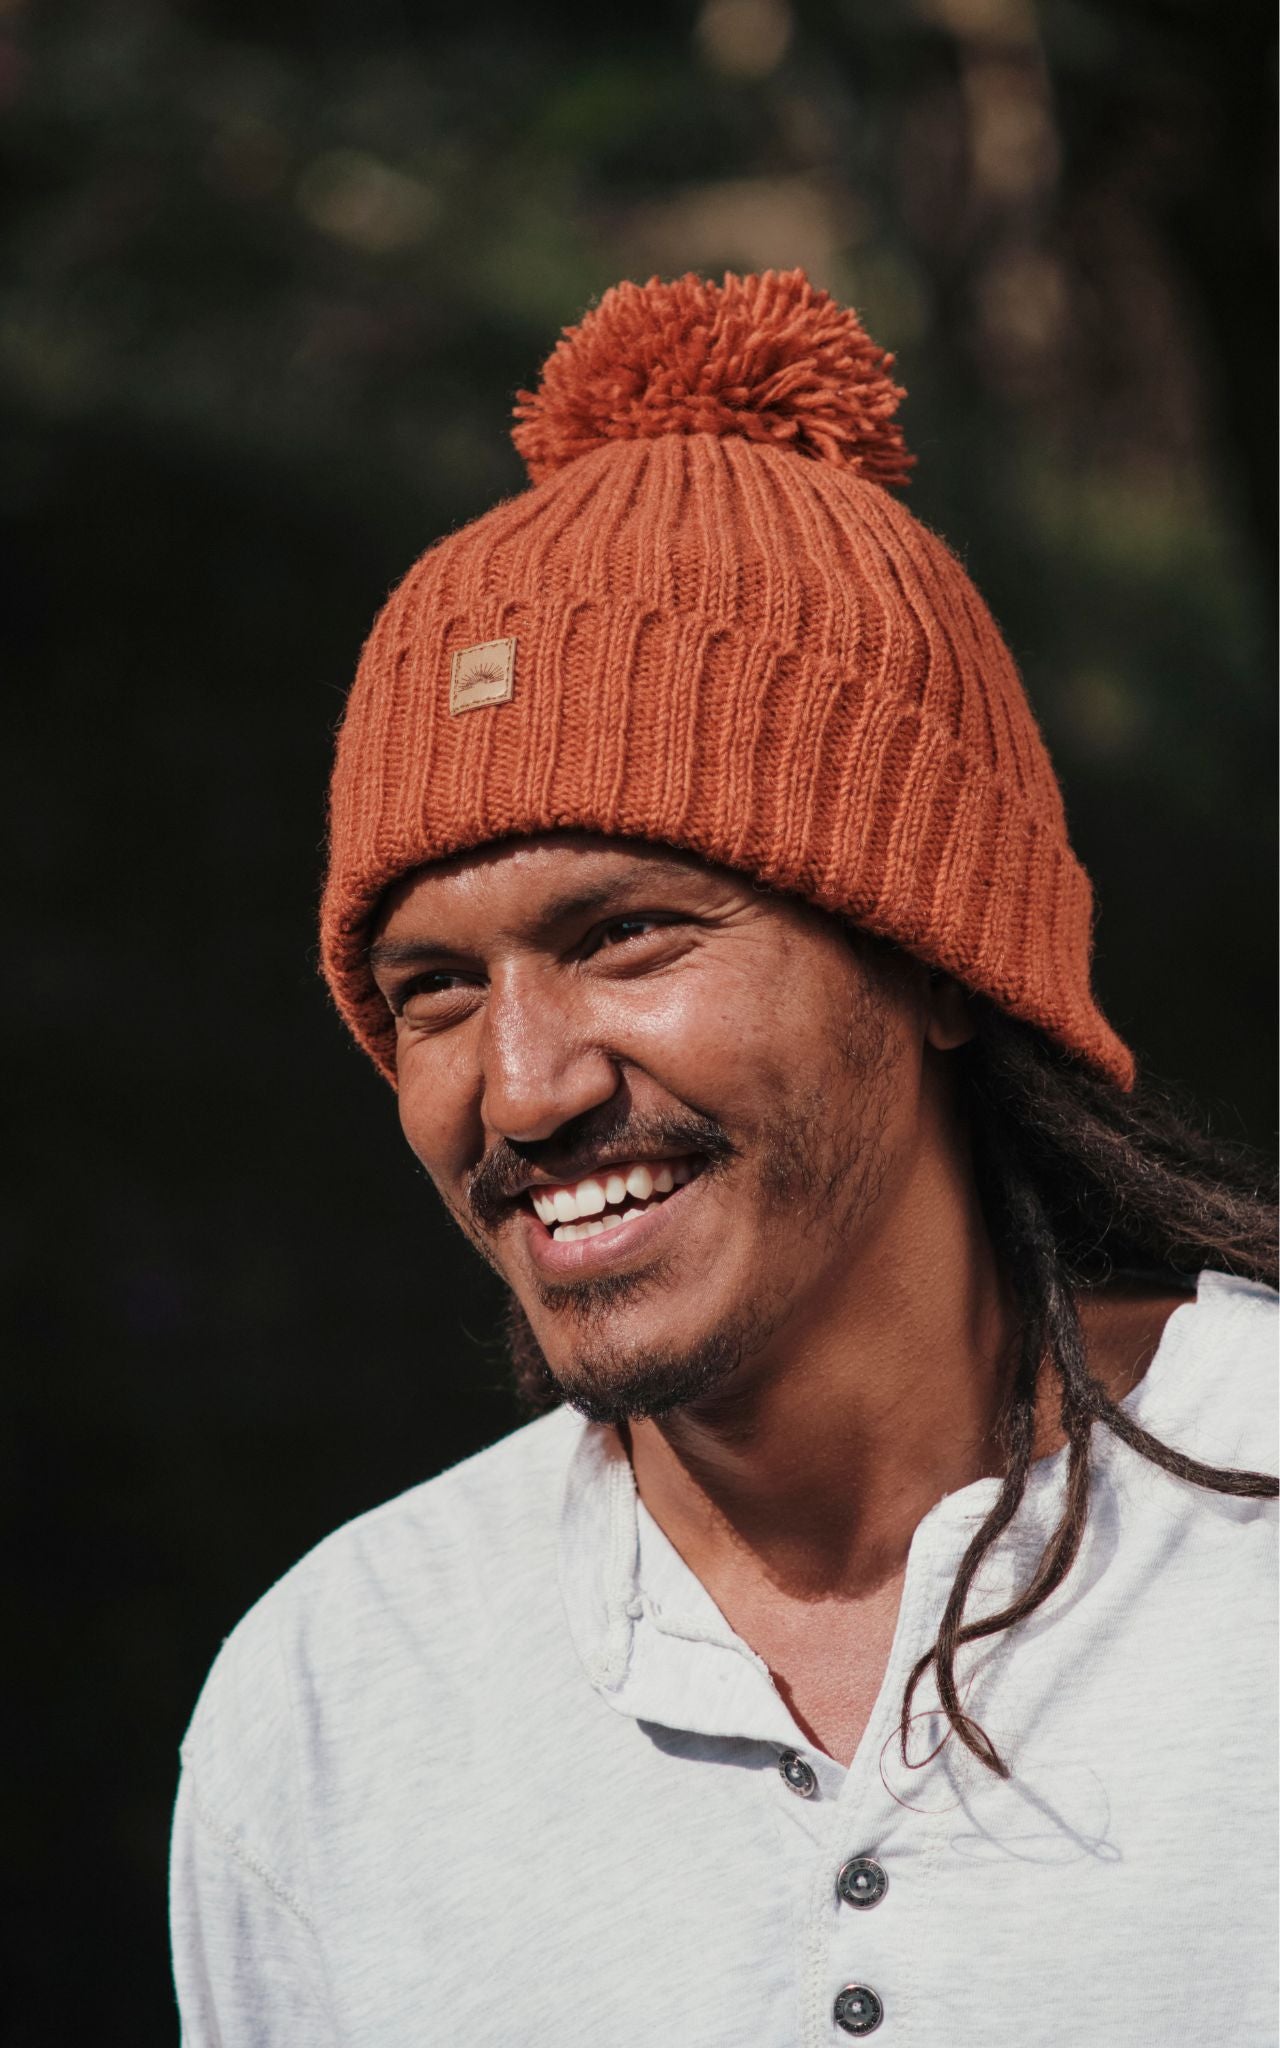 Surya Australia Ethical Wool Pompom Beanie for Men from Nepal - Burnt Orange